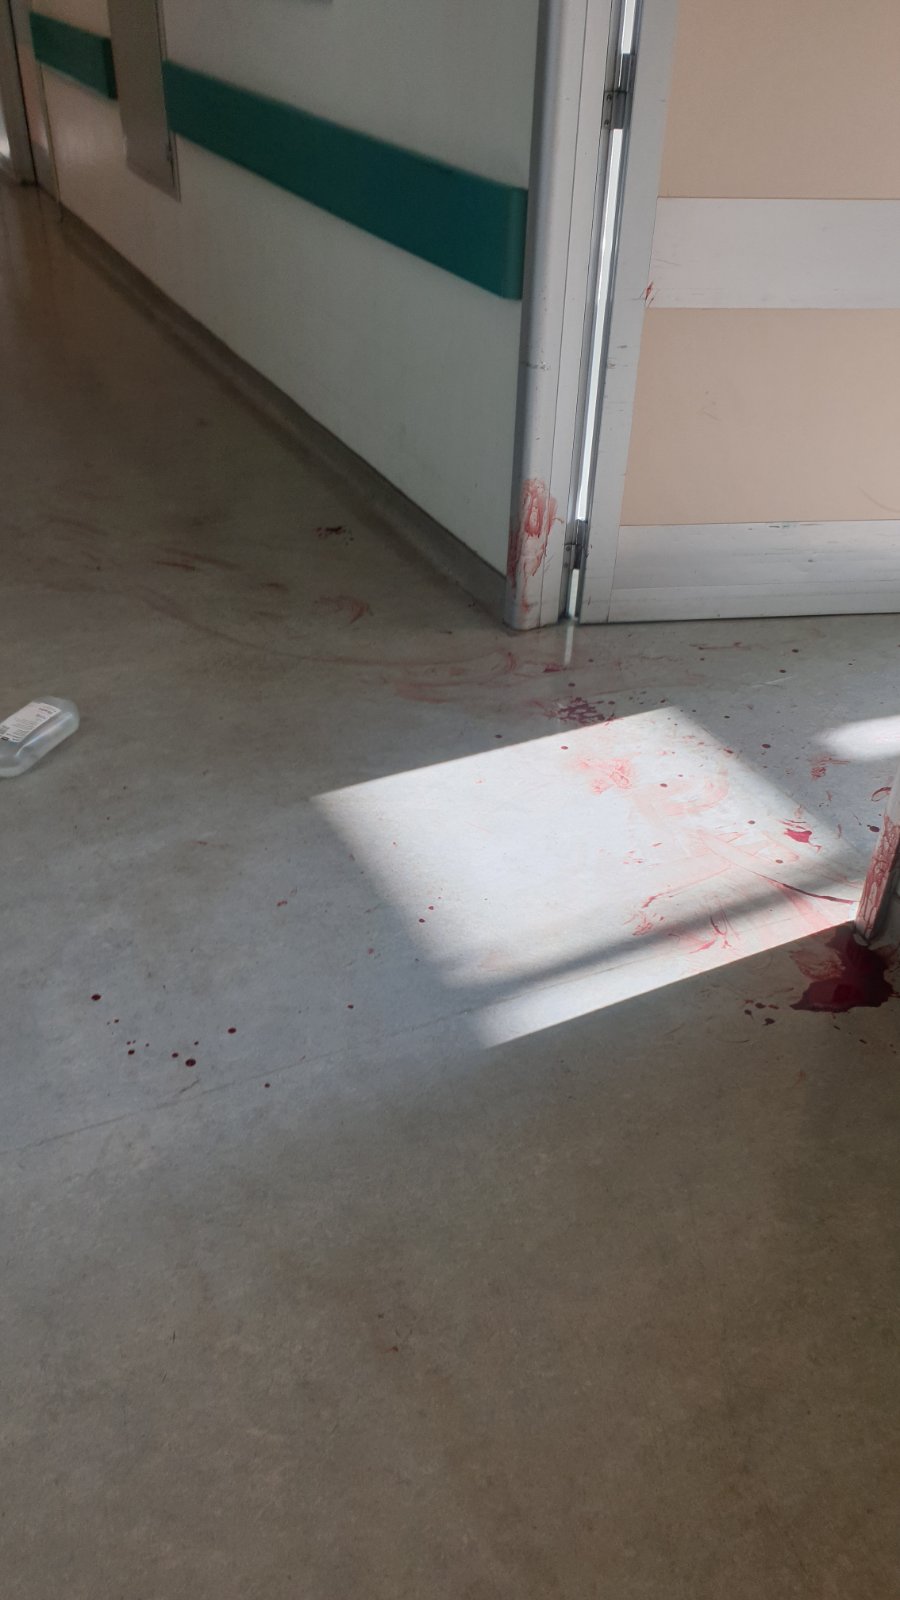 Νοσοκομείο Αττικόν: 56χρονος μαχαίρωσε νοσηλεύτρια με δύο παιδιά και αυτοκτόνησε [vid & picks]